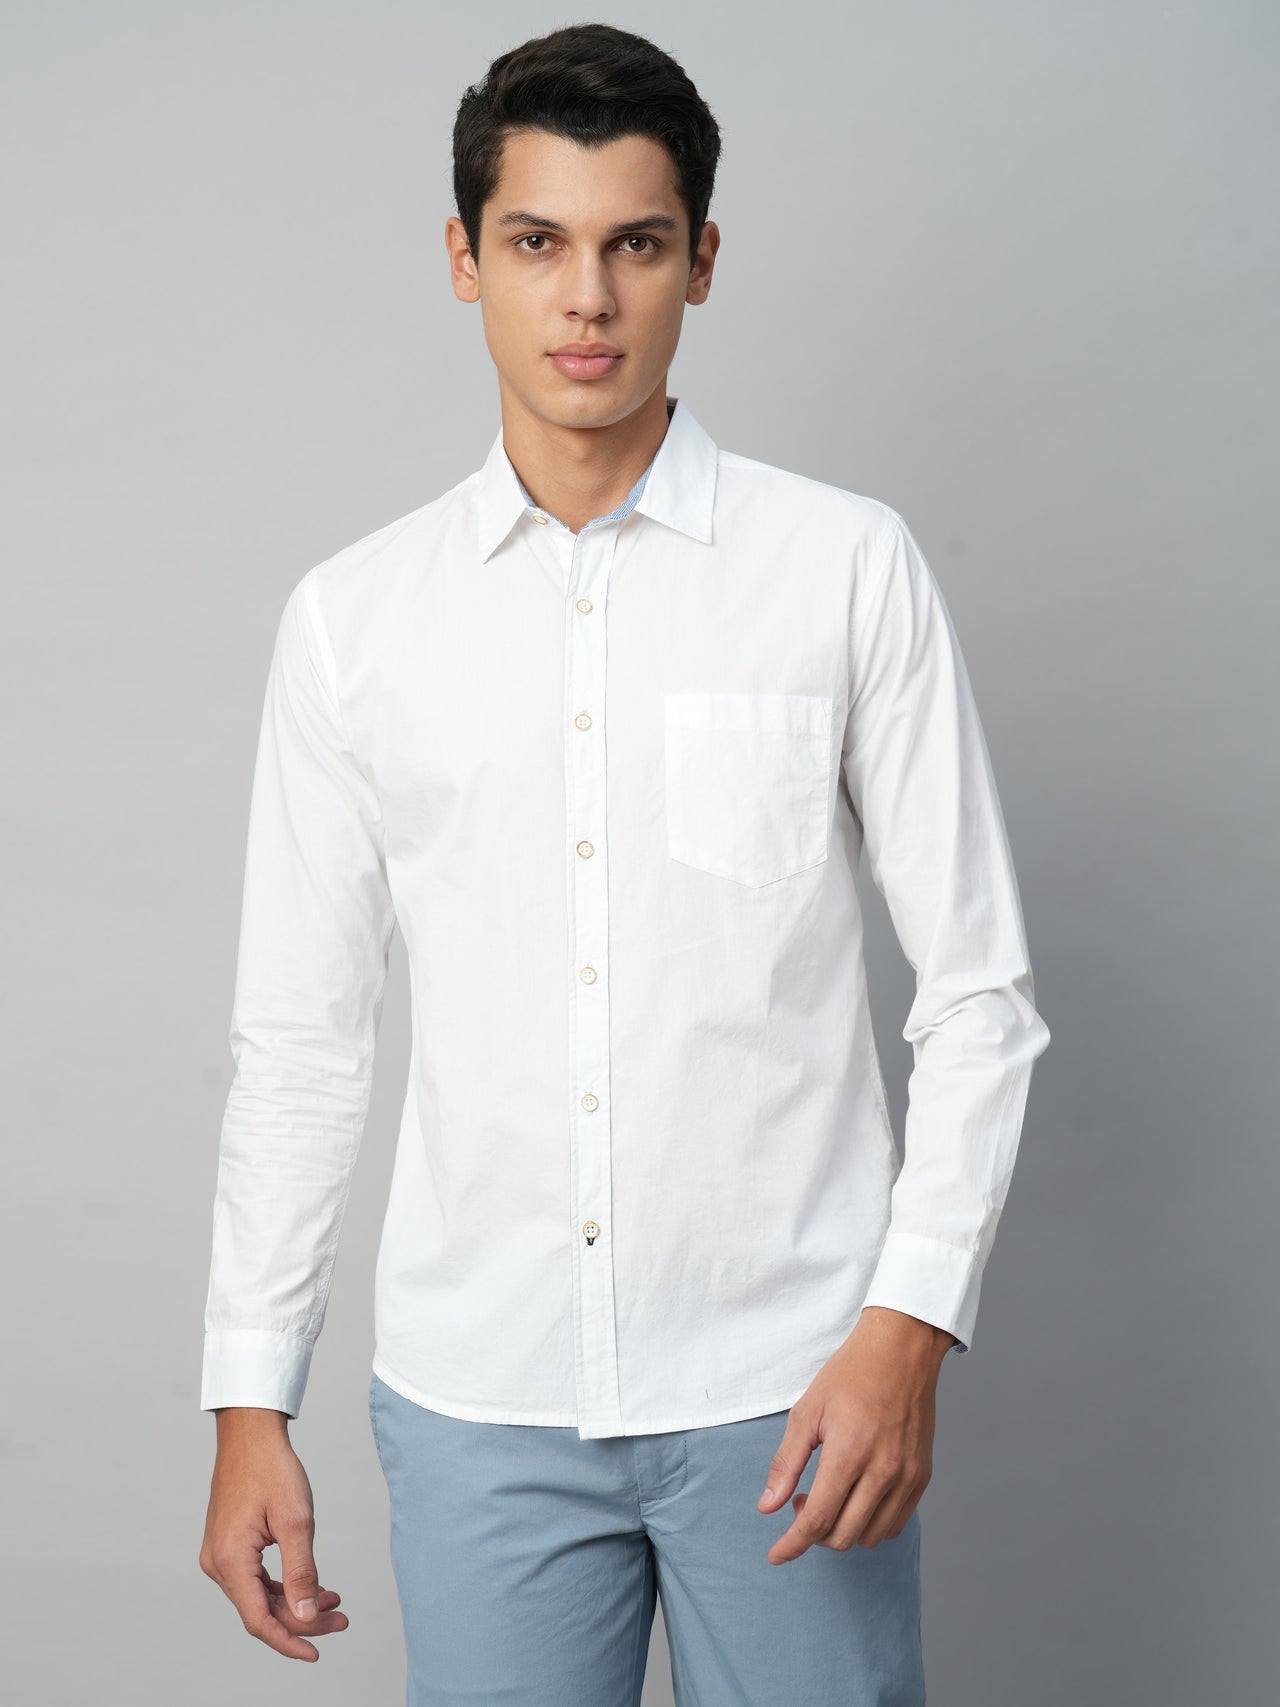 Men's White Cotton Regular Fit Shirts